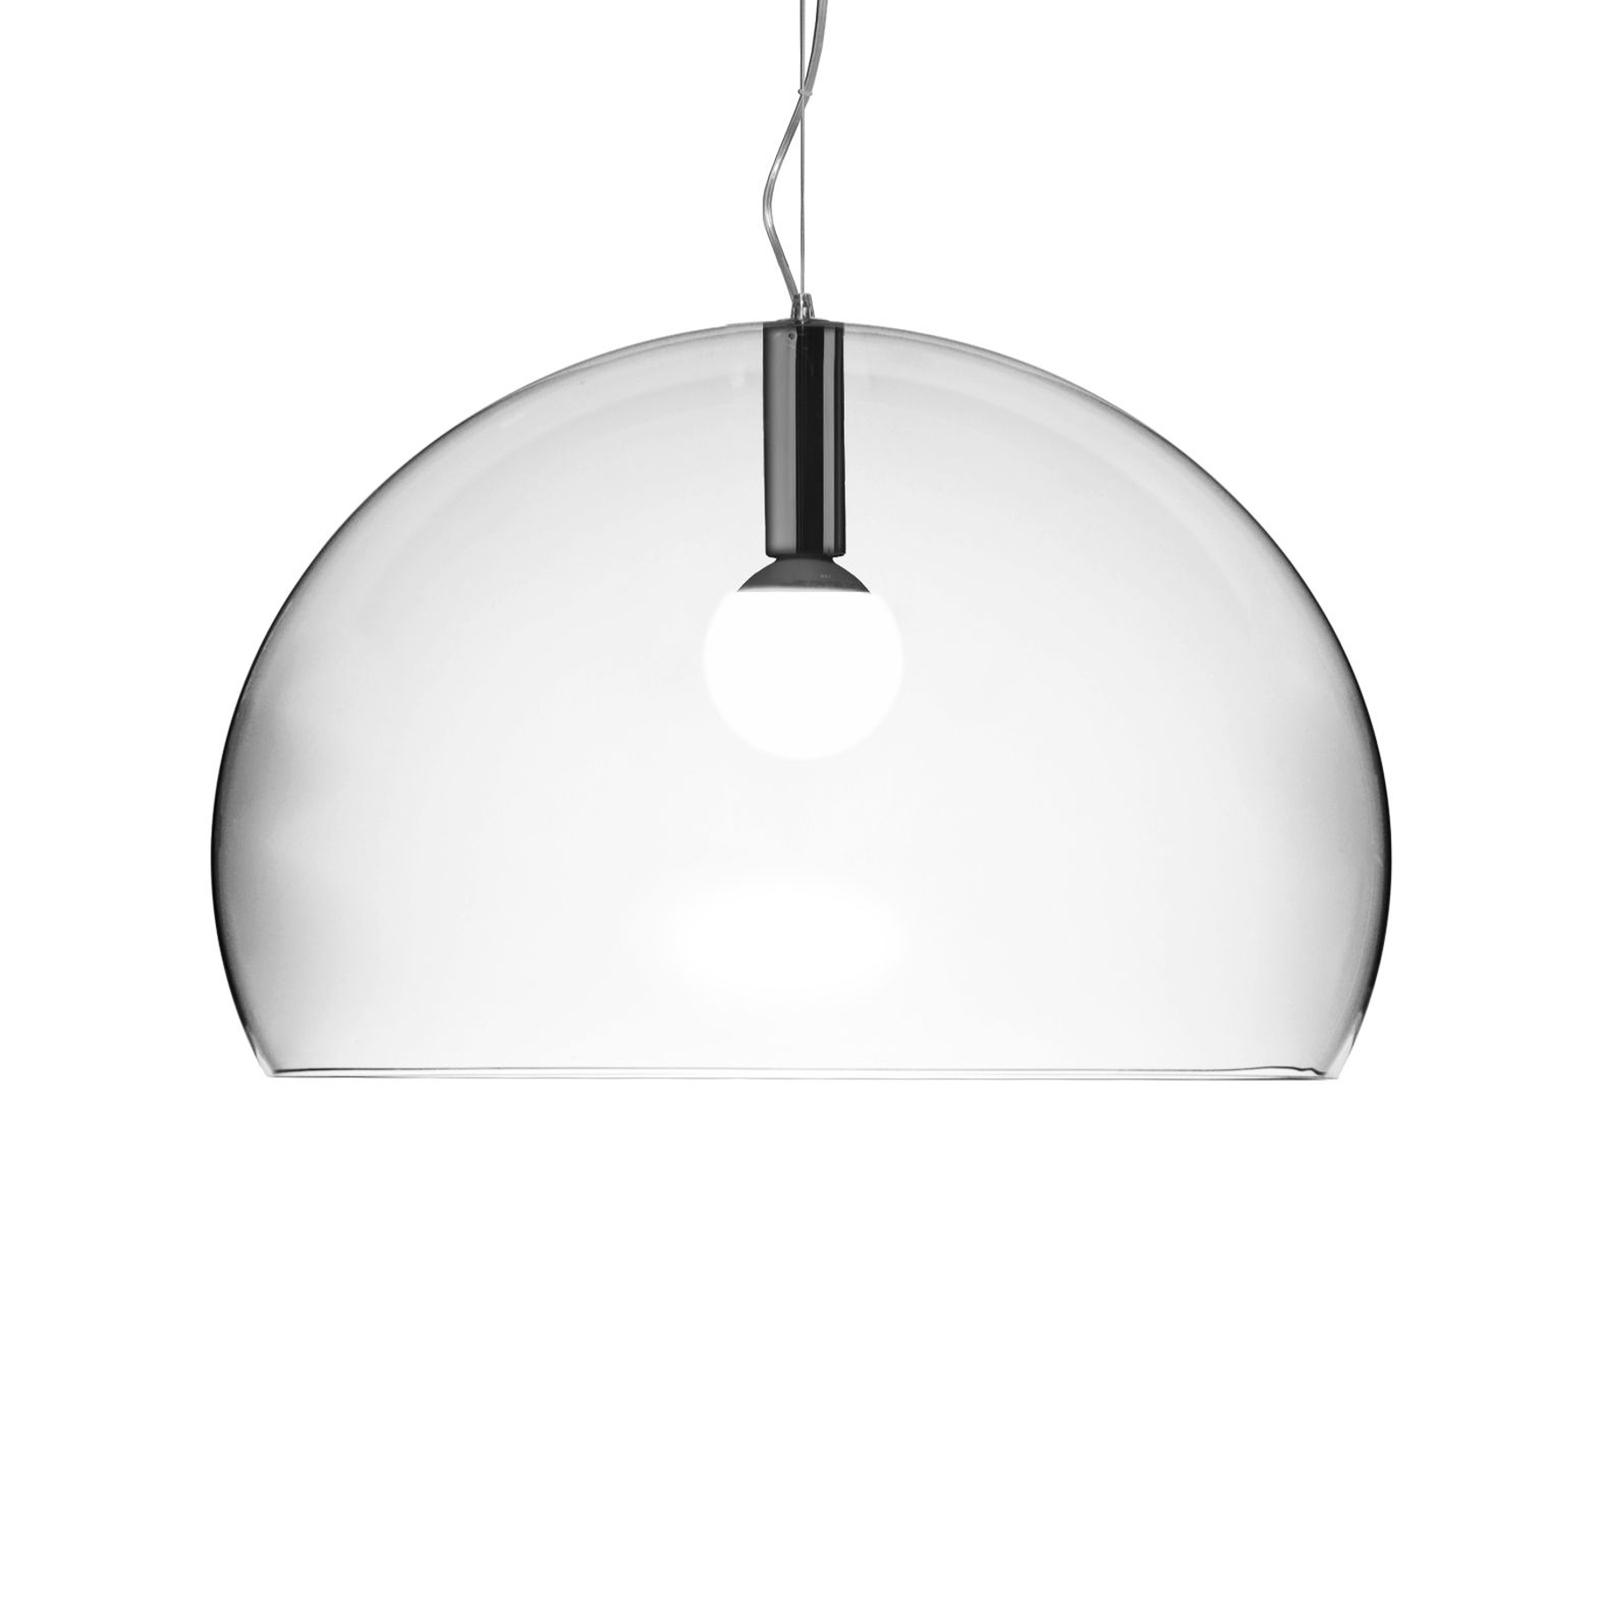 Big FL/Y - designer LED hanging light, transparent